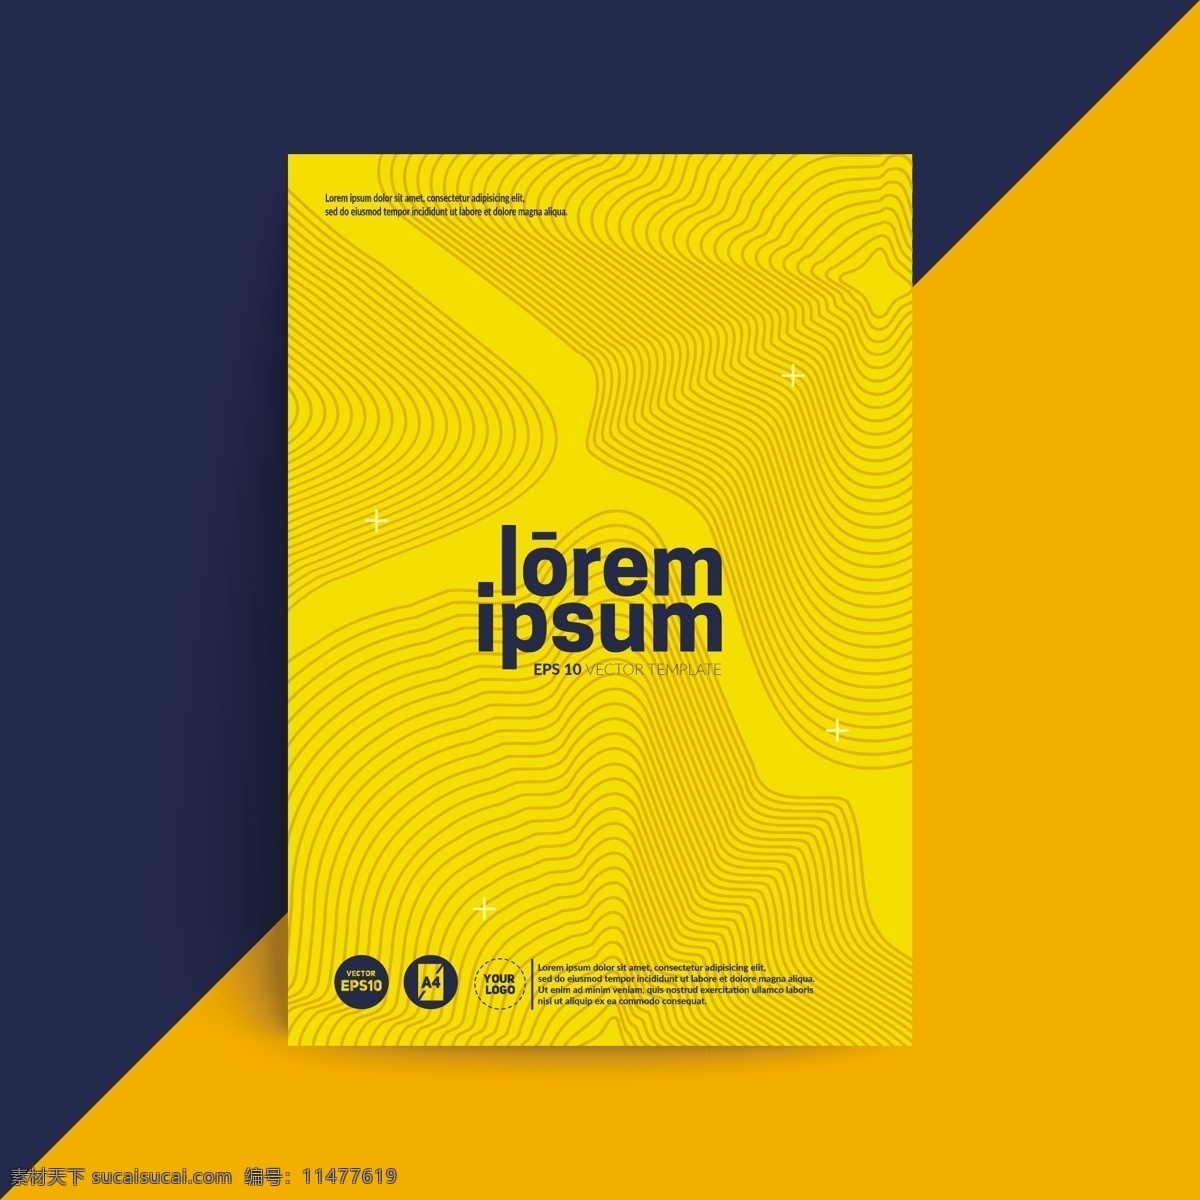 欧美 封面 制作 样式 设计矢量图片 曲线 底纹 平面设计 矢量图 矢量素材 日韩风格 梦幻风格 黄色